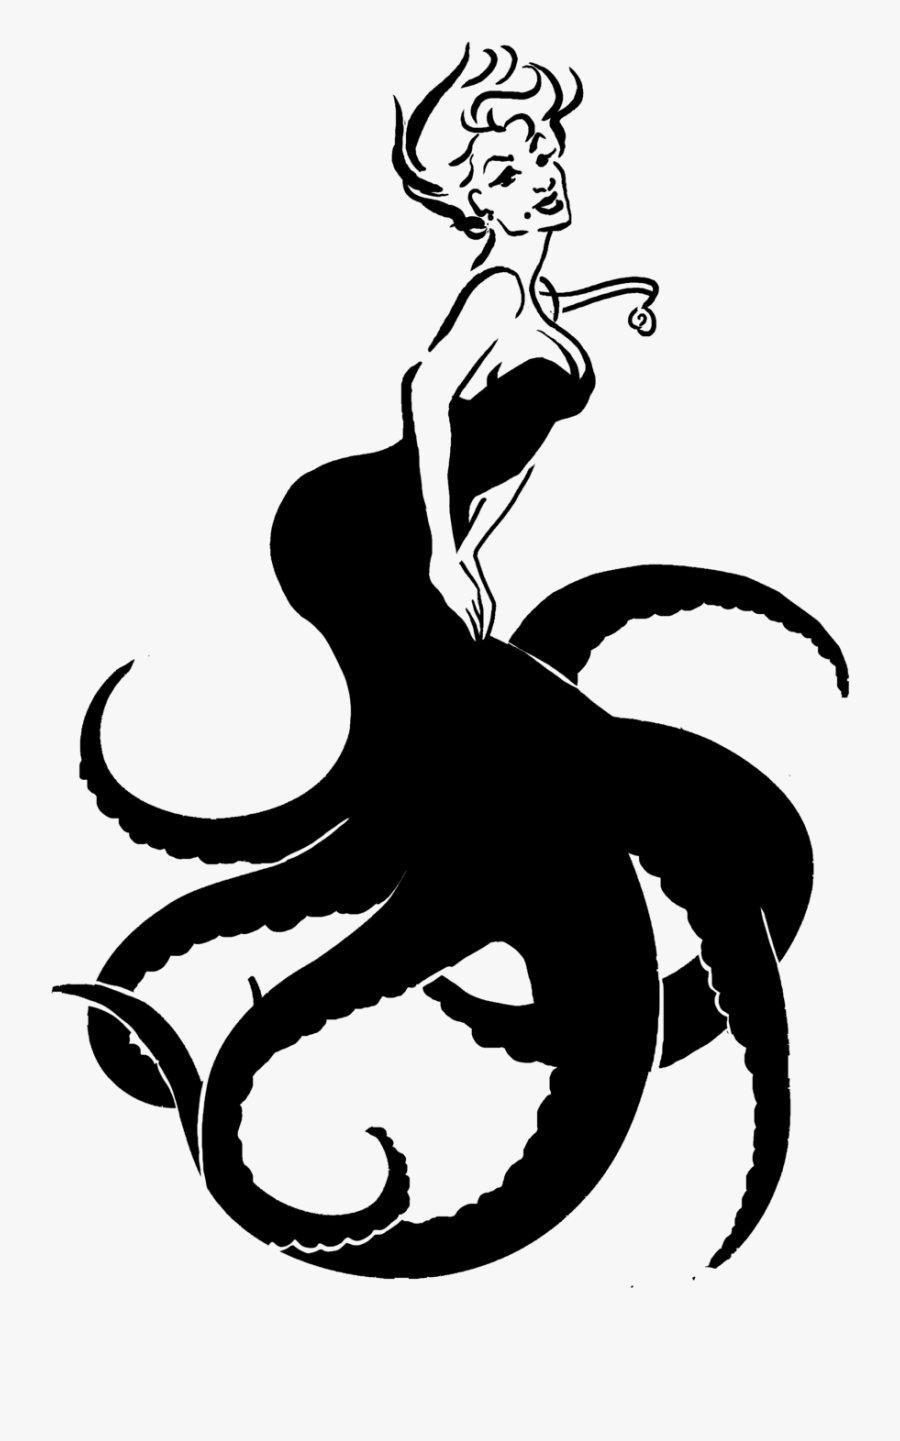 Ursula Ariel Maleficent Drawing Art - Ursula Ariel Png, Transparent Clipart